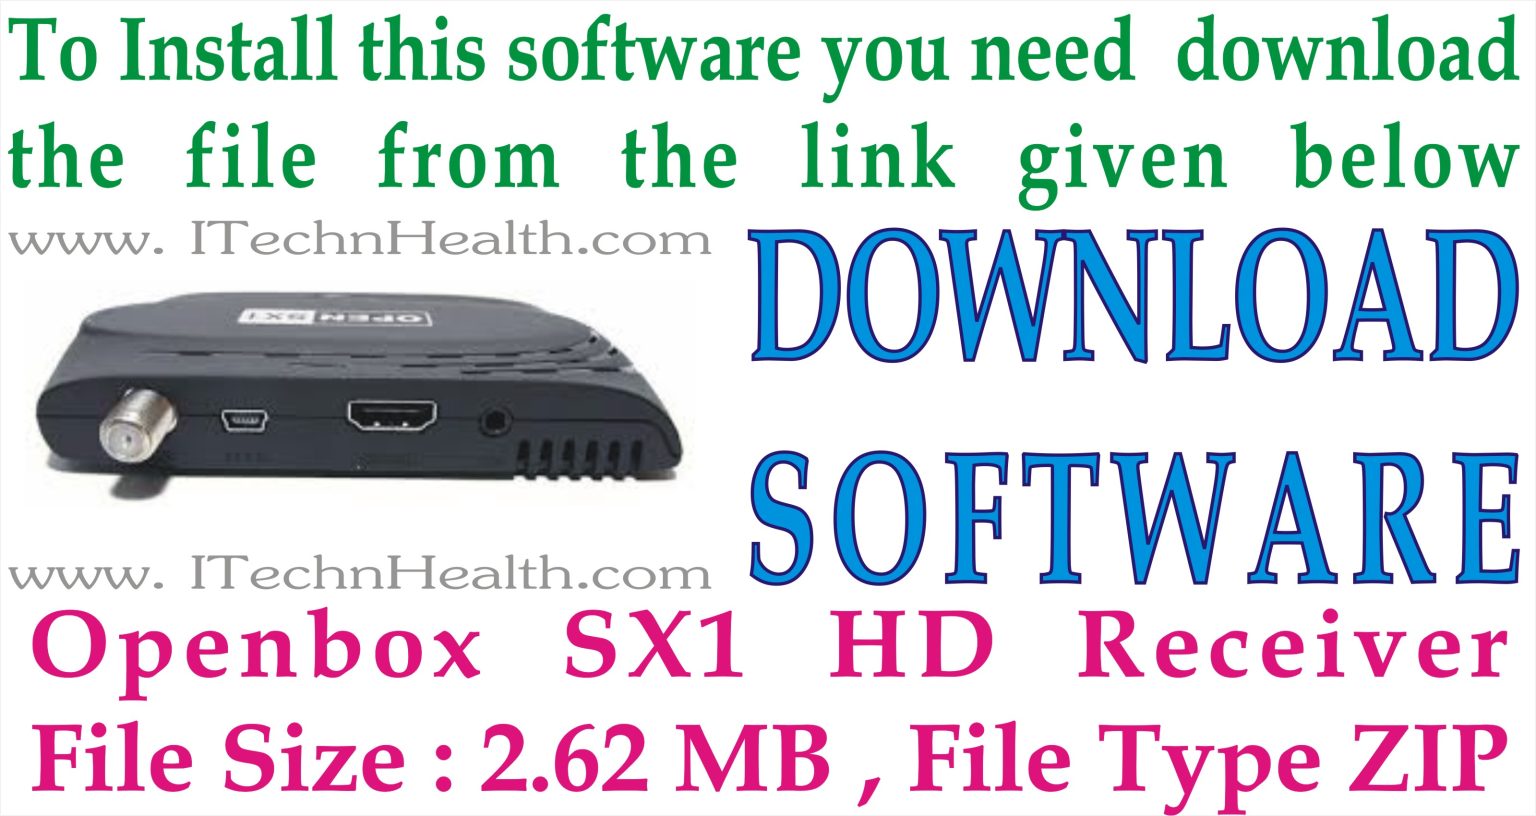 openbox sx6 hd firmware version